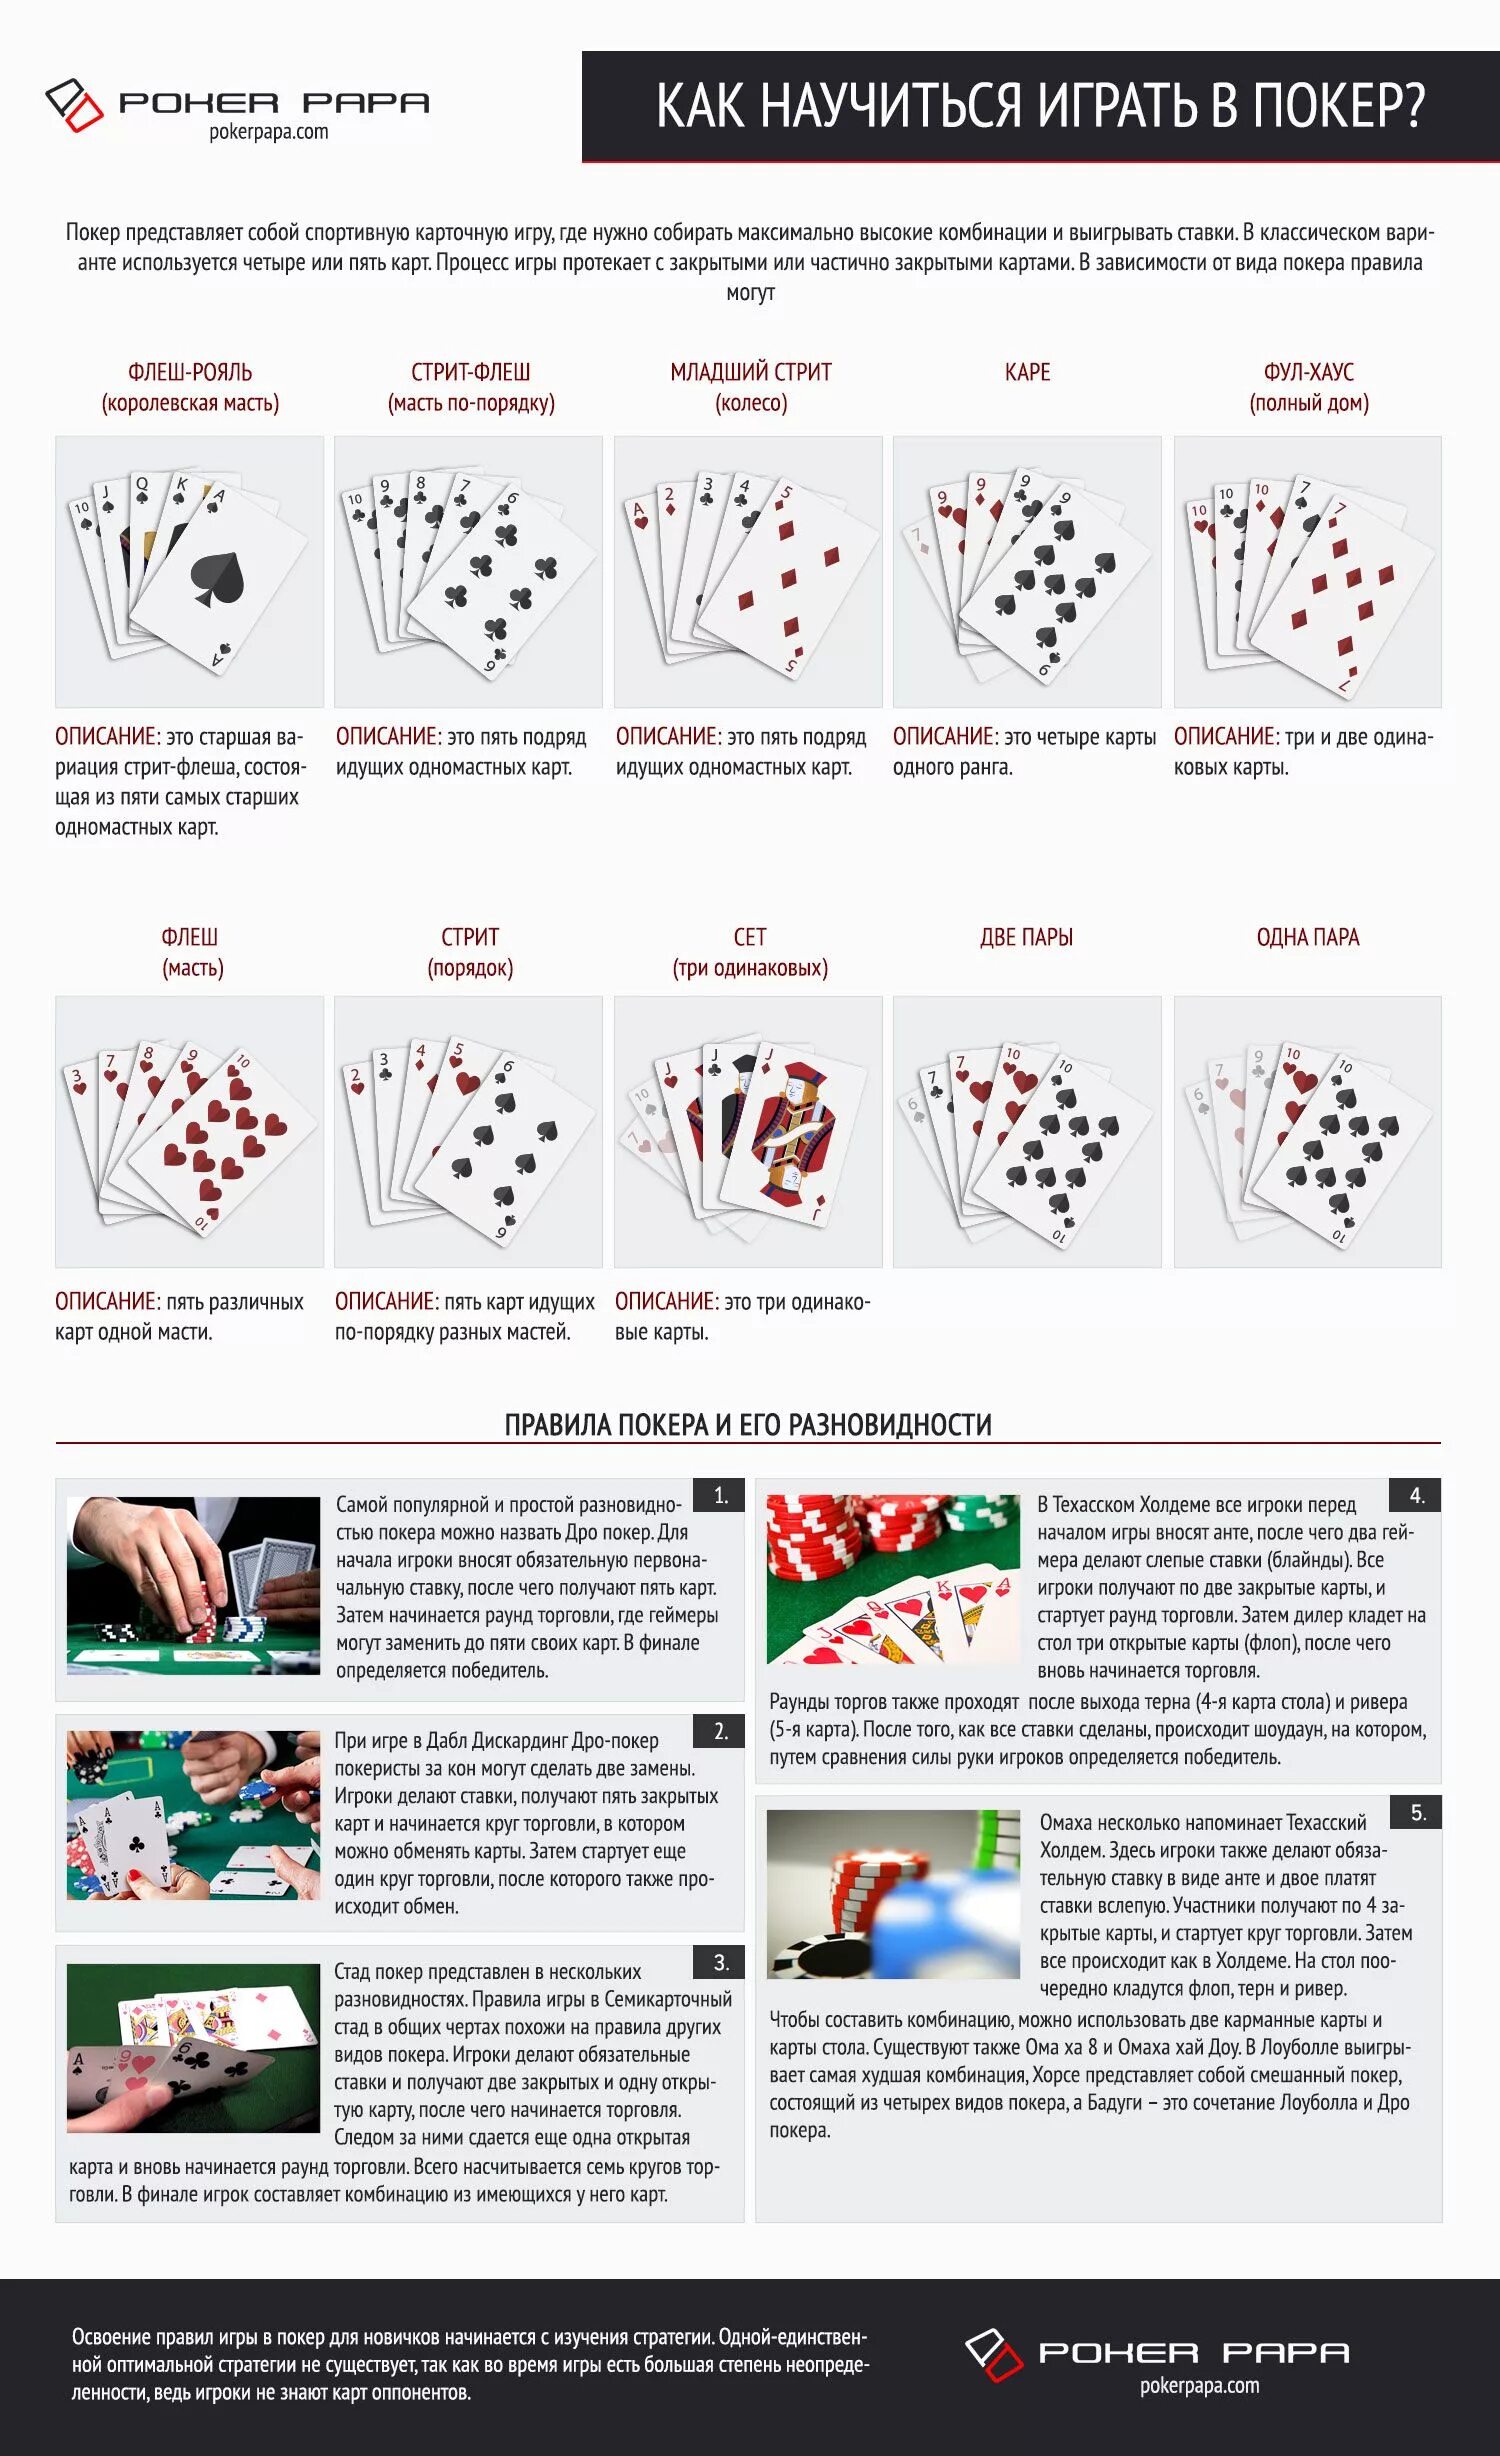 Обучение игры в покер. Игра Покер правила игры. Комбинации игры в Покер для начинающих. Правила покера для начинающих. Схема покера.